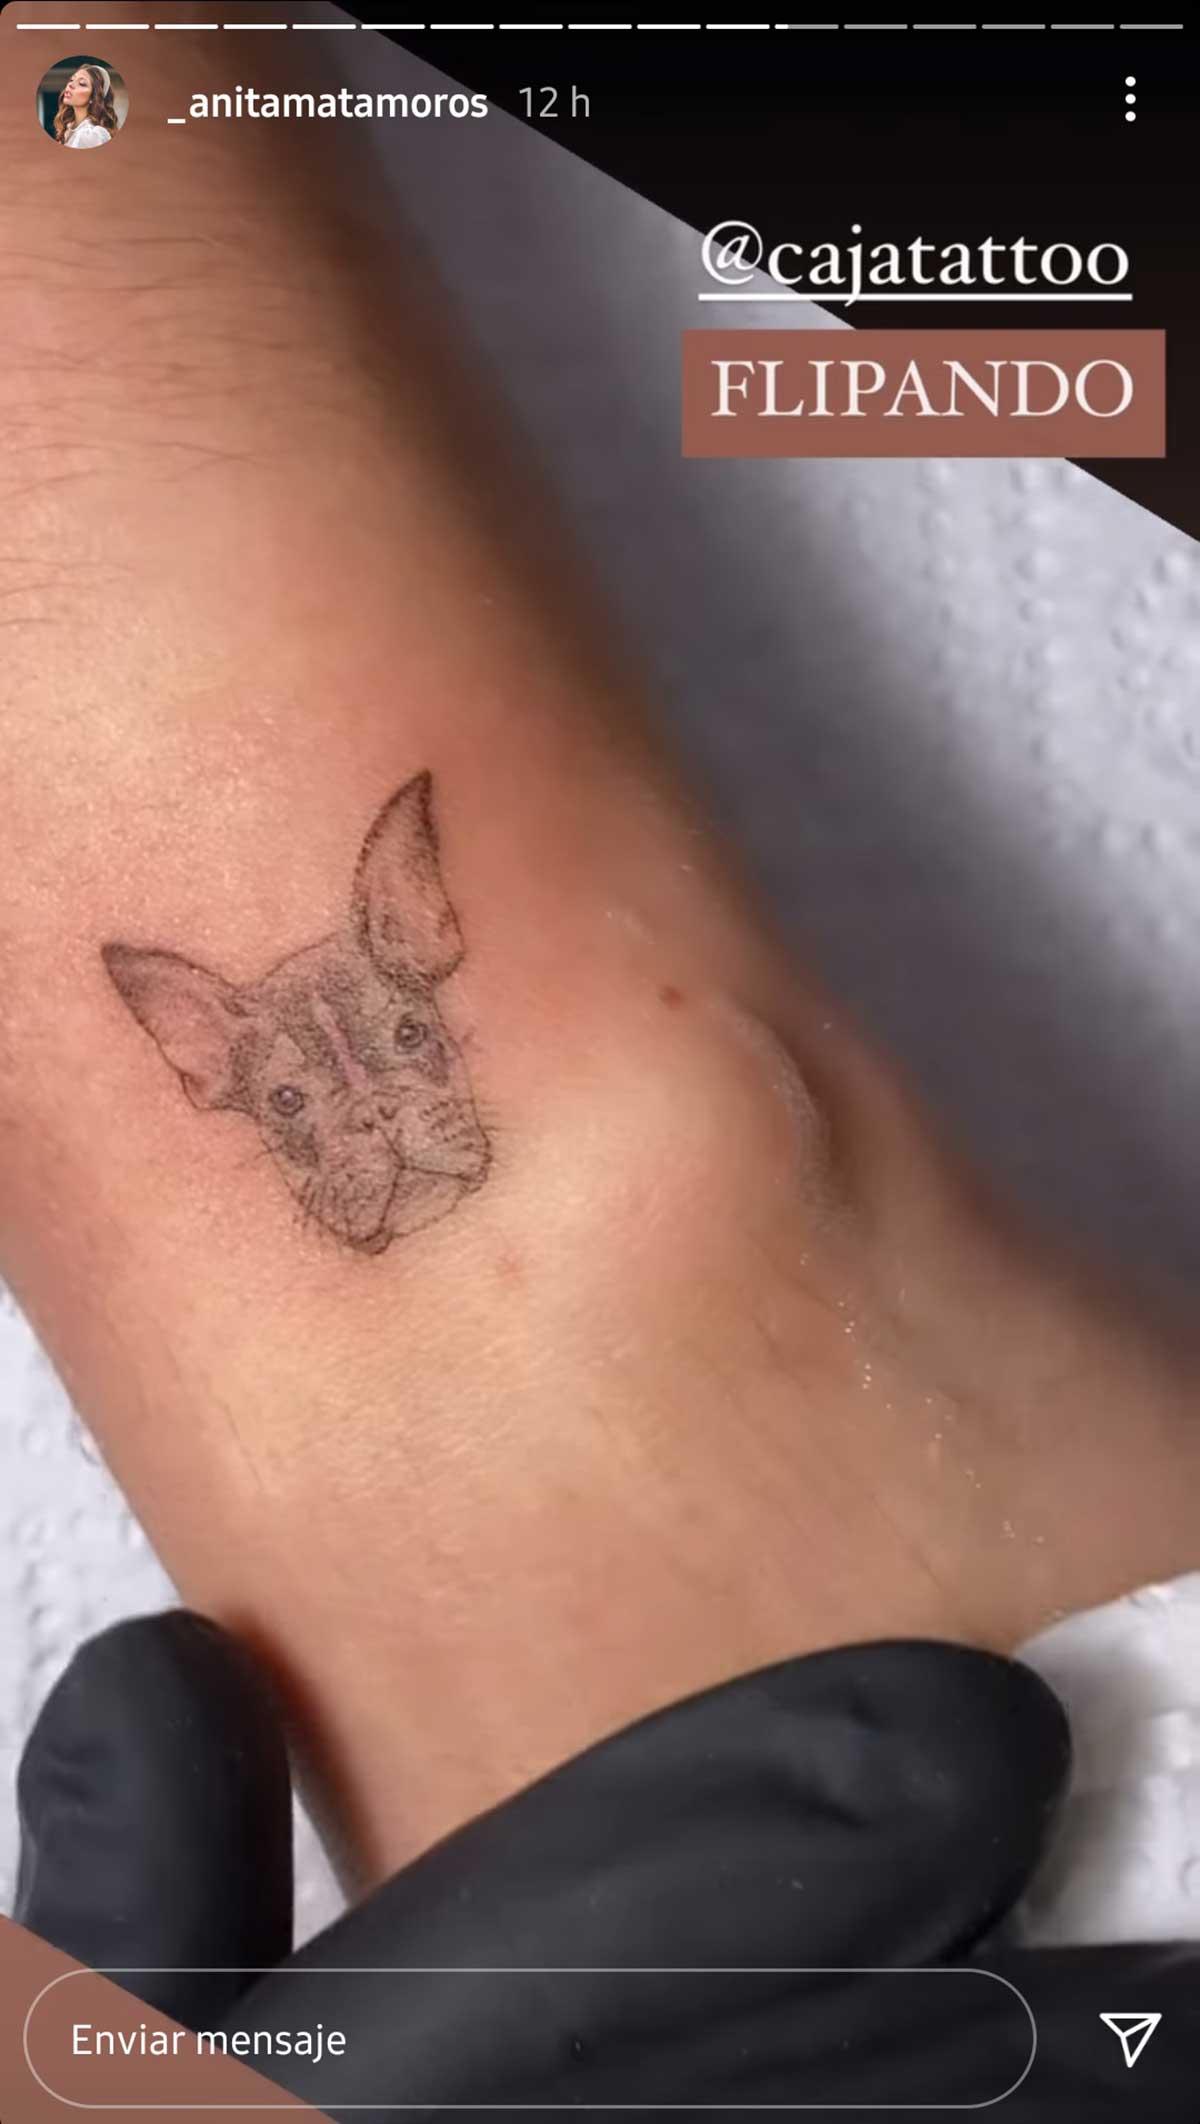 El nuevo tatuaje que Anita Matamoros dedica a un miembro de su familia